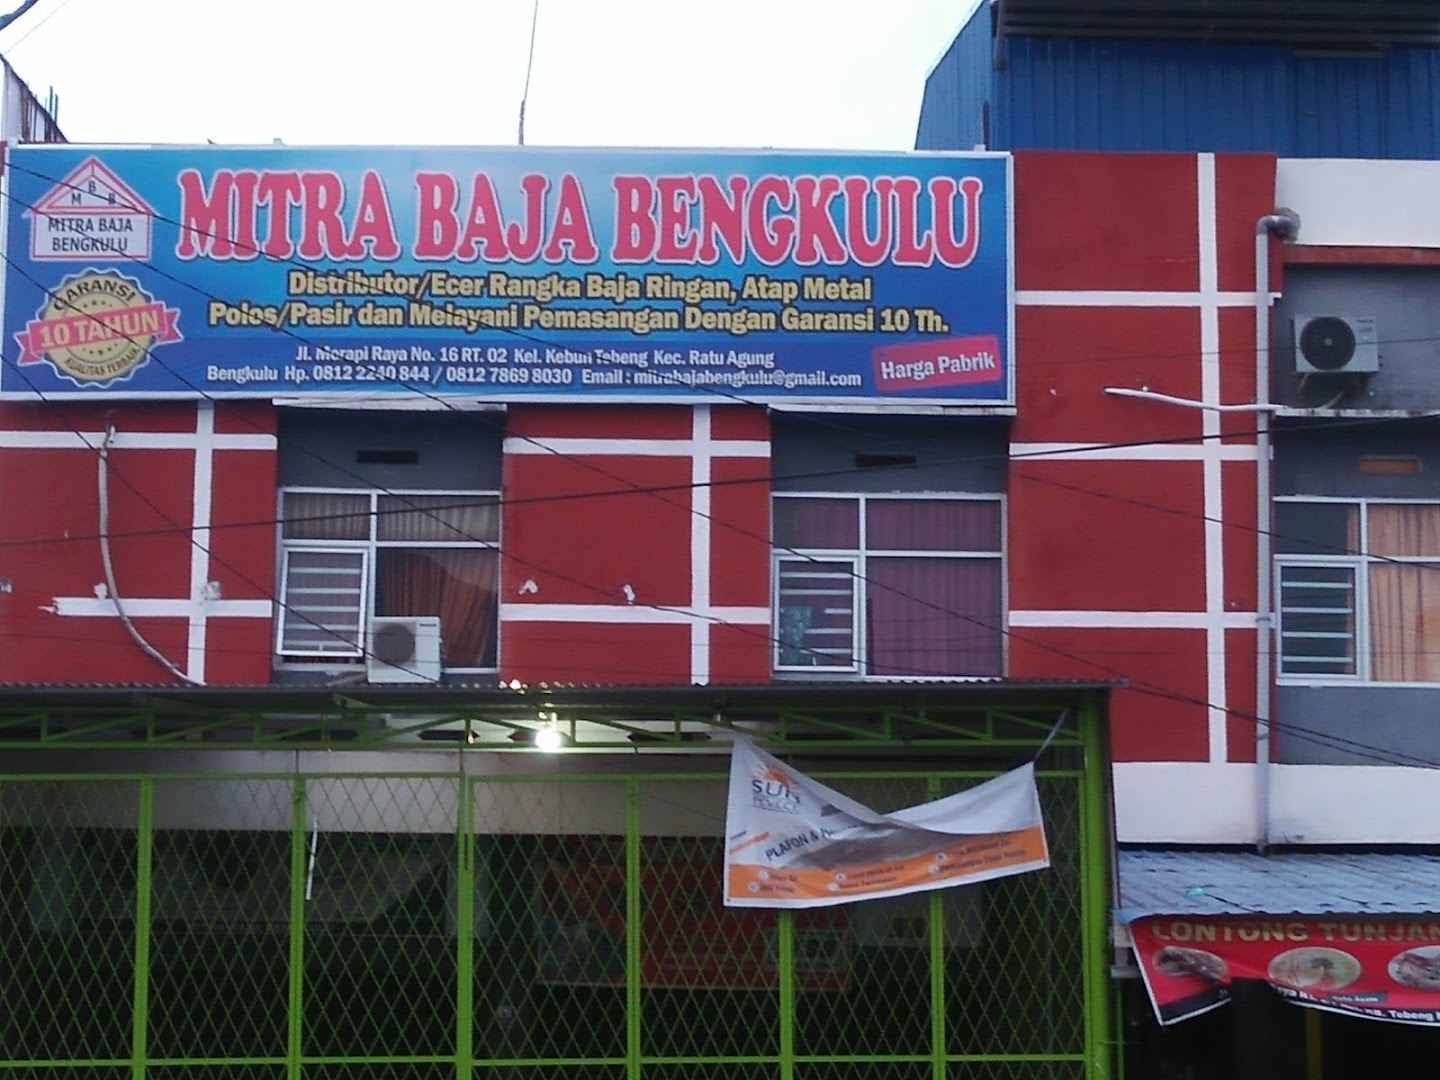 Mitra Baja Bengkulu Photo